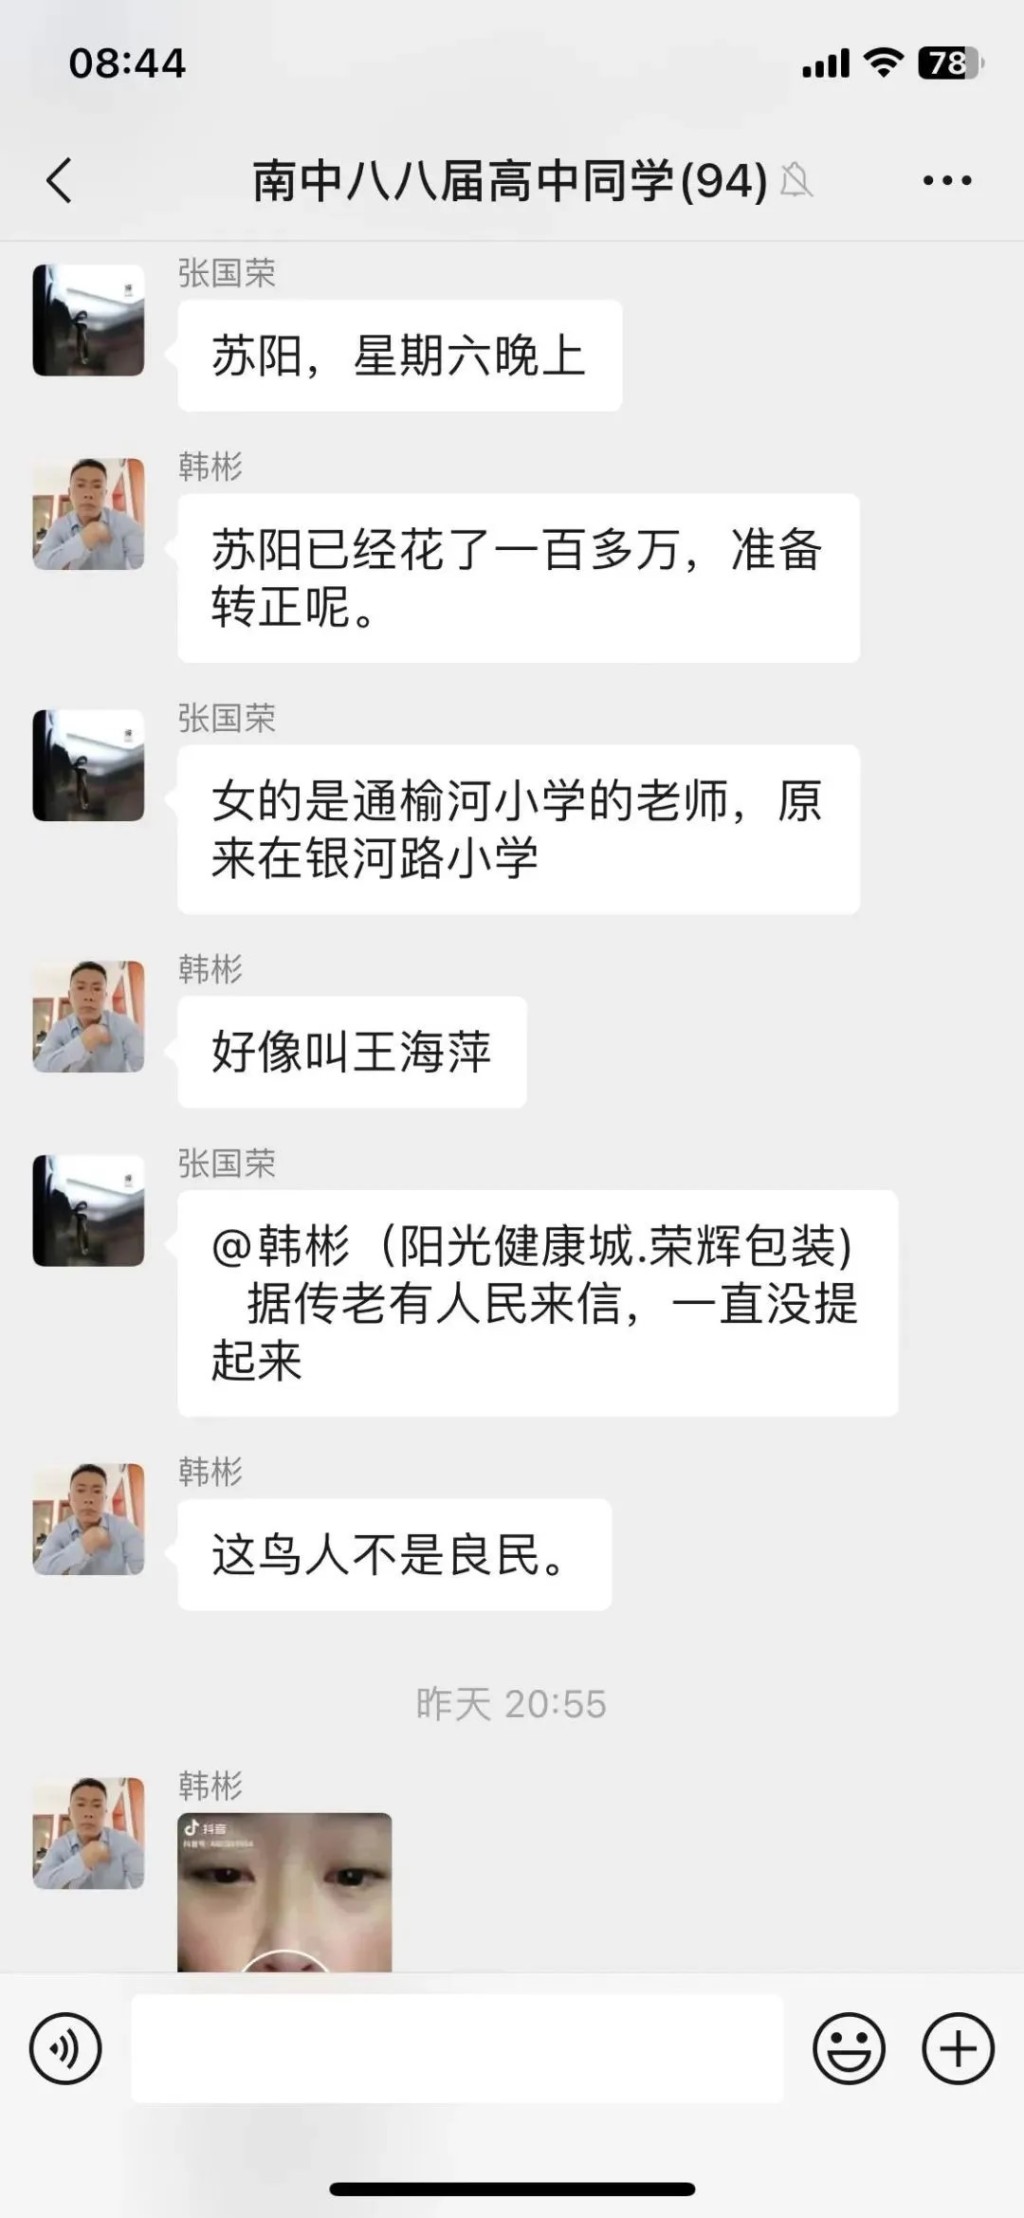 网民一度广泛讨论响水县城管局副局长苏阳及小学女教师王海萍怀疑「车震」事件。